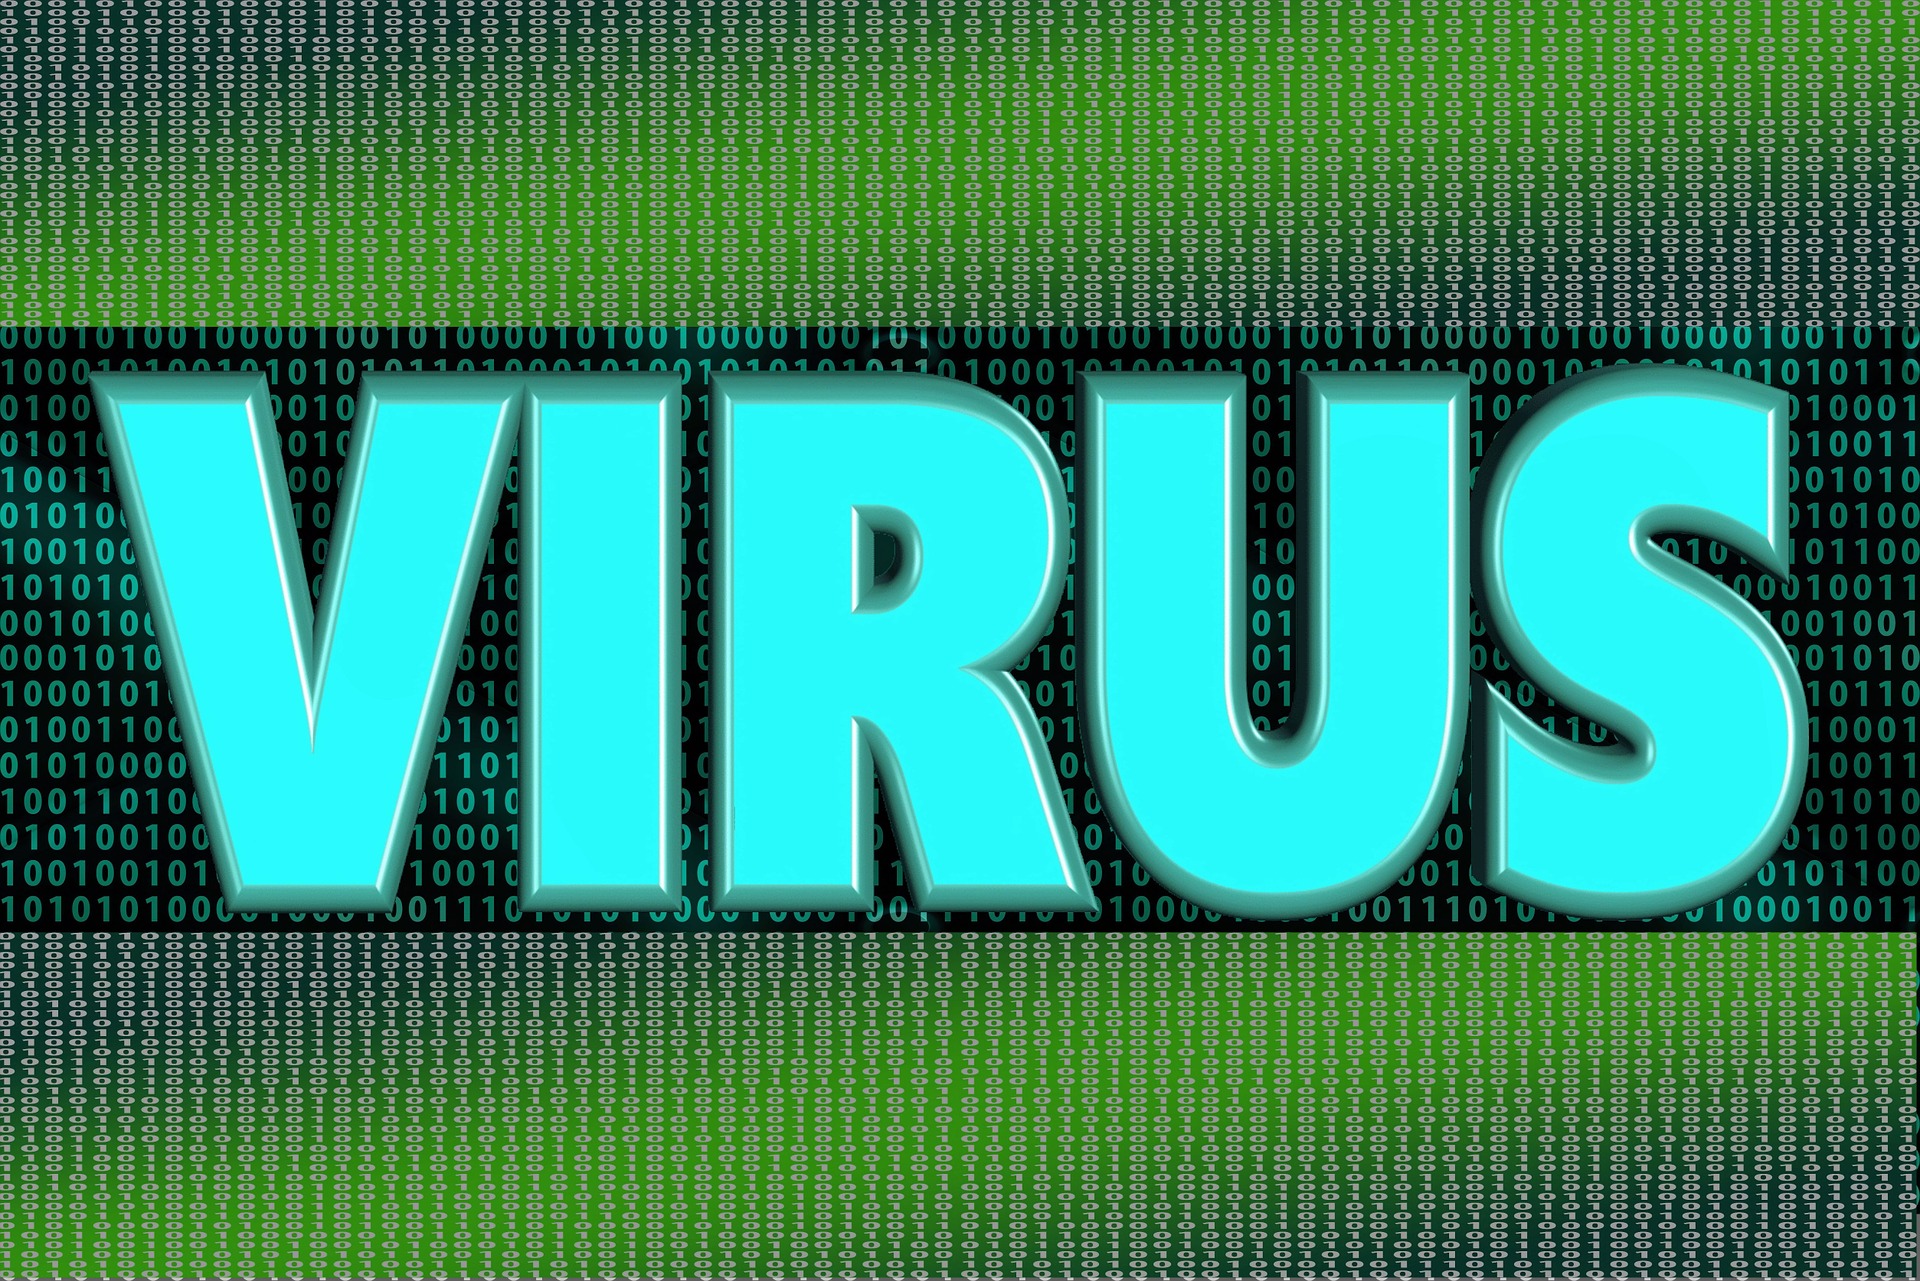 Vírusos az egyik legfontosabb, nemzetközi koronavírus oldal?